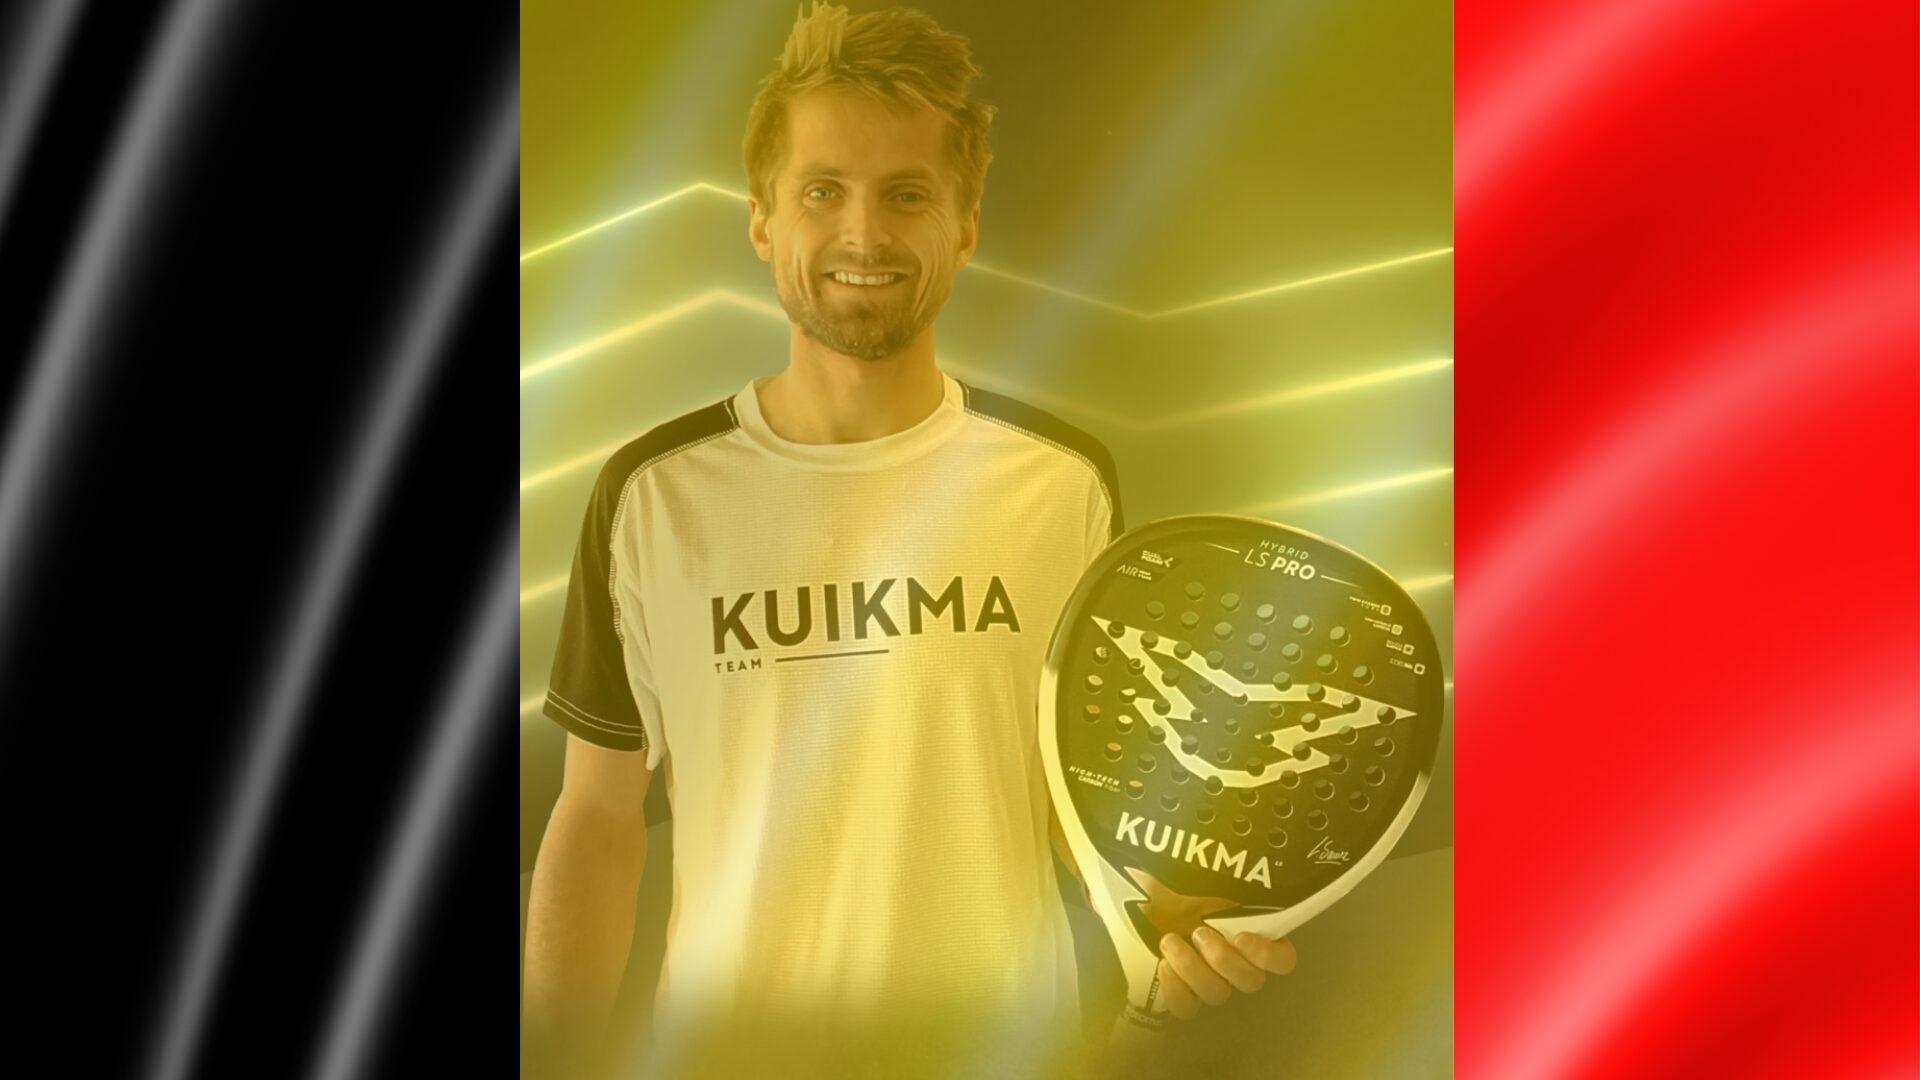 Le Belge Clément Geens rejoint Kuikma !